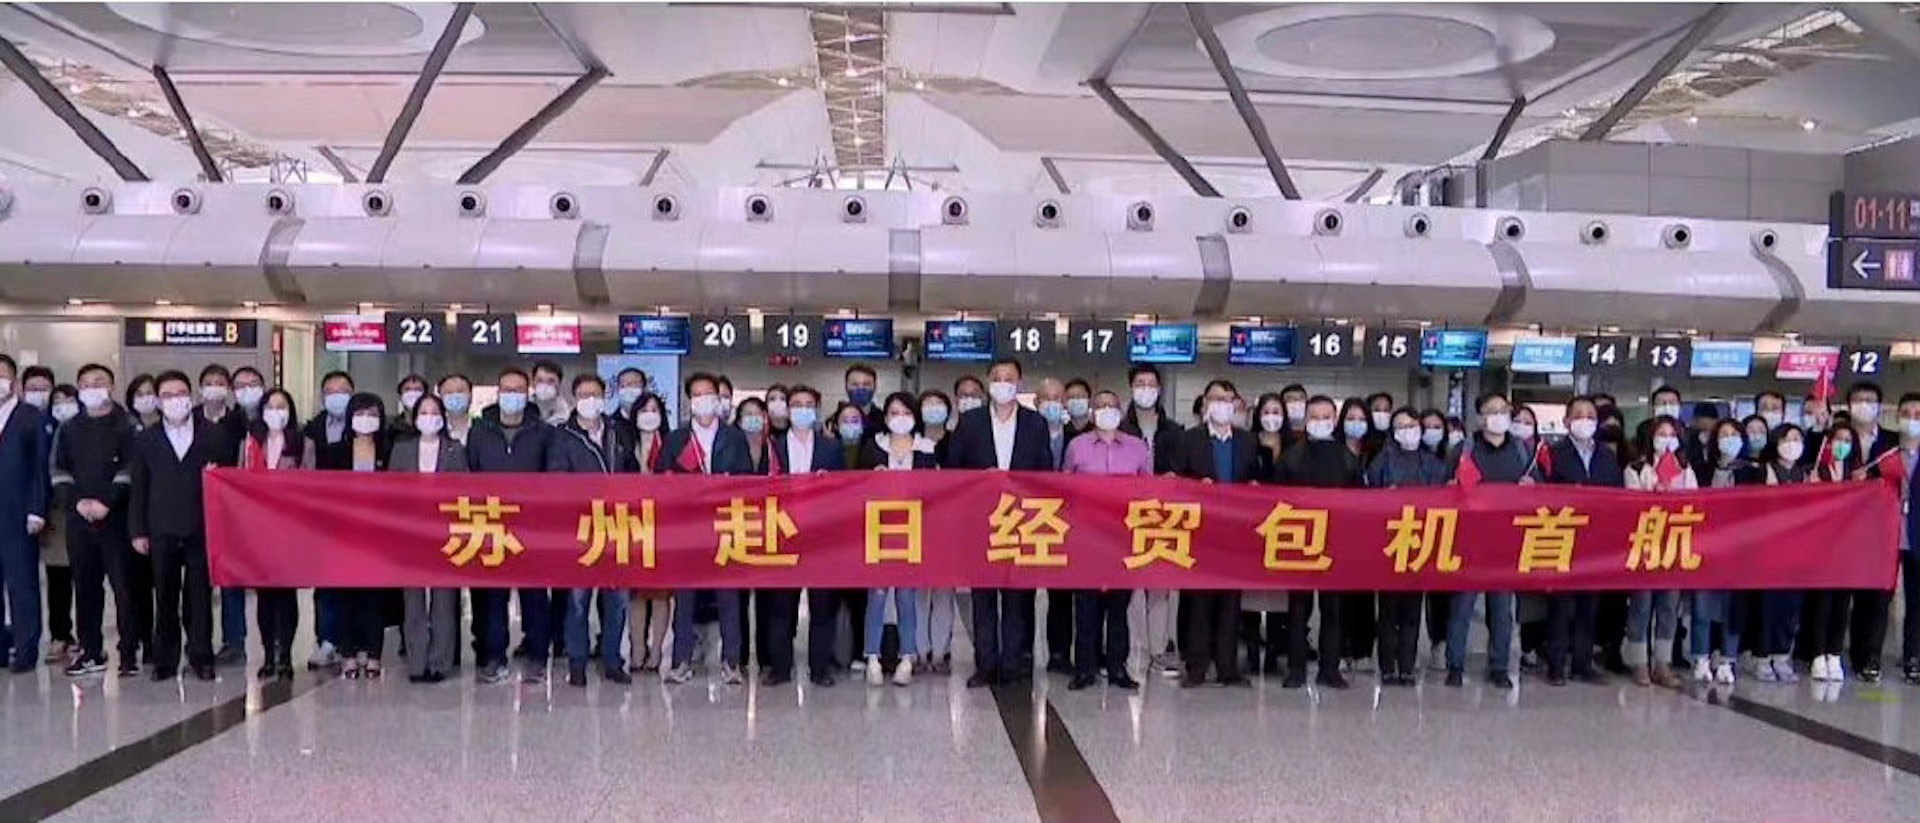 苏州赴日经贸包机首航的团员合照。